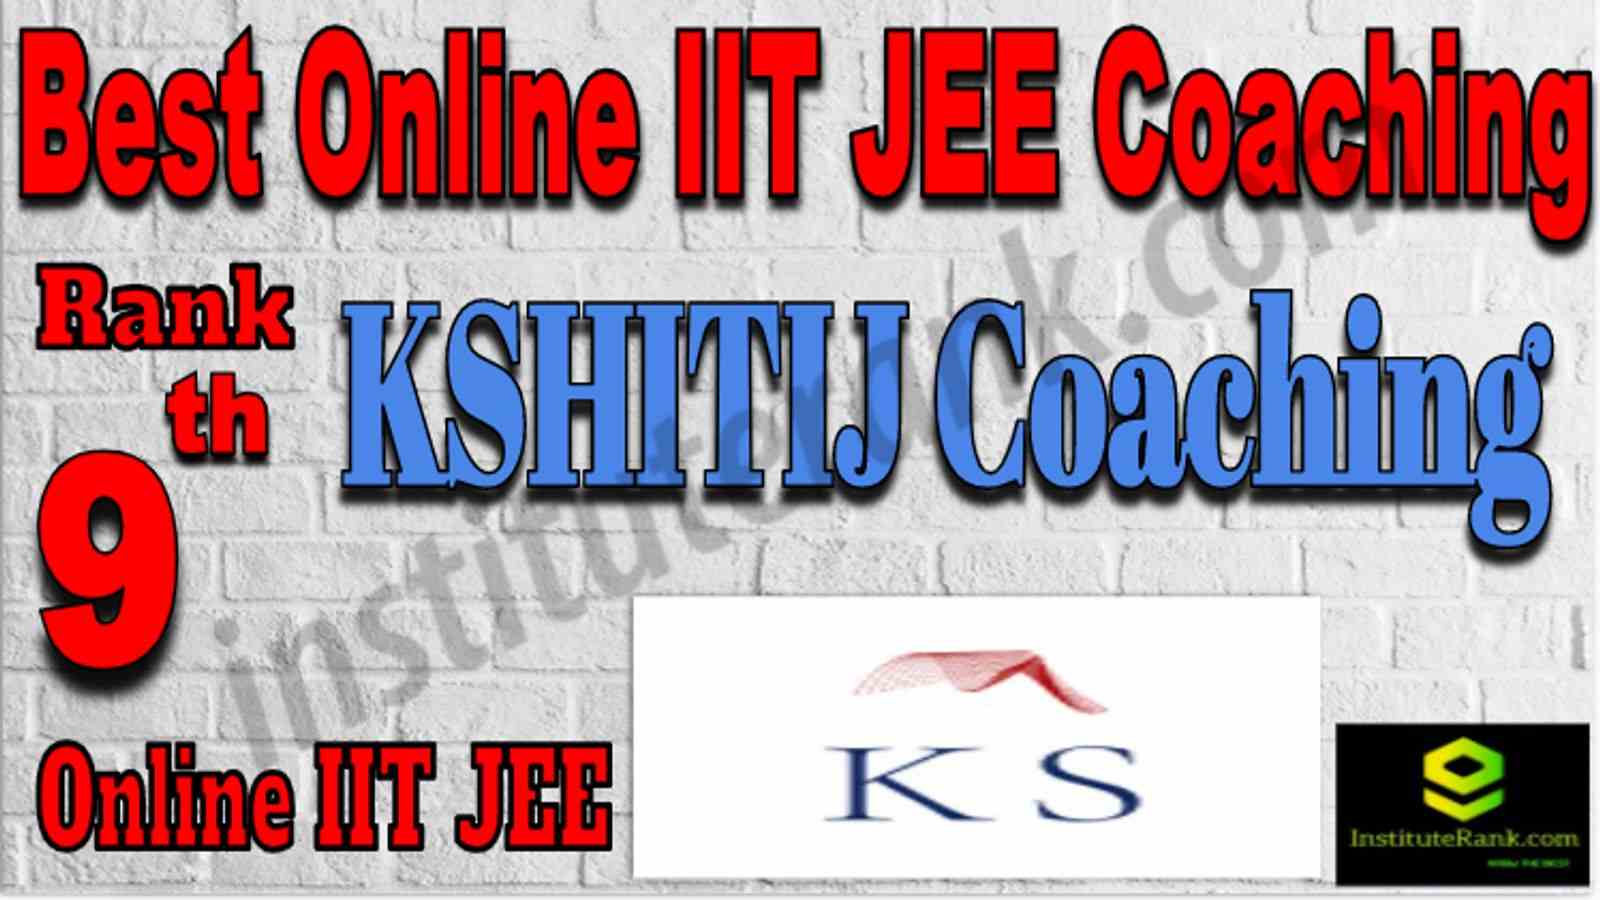 Rank 9 Best Online IIT JEE Coaching